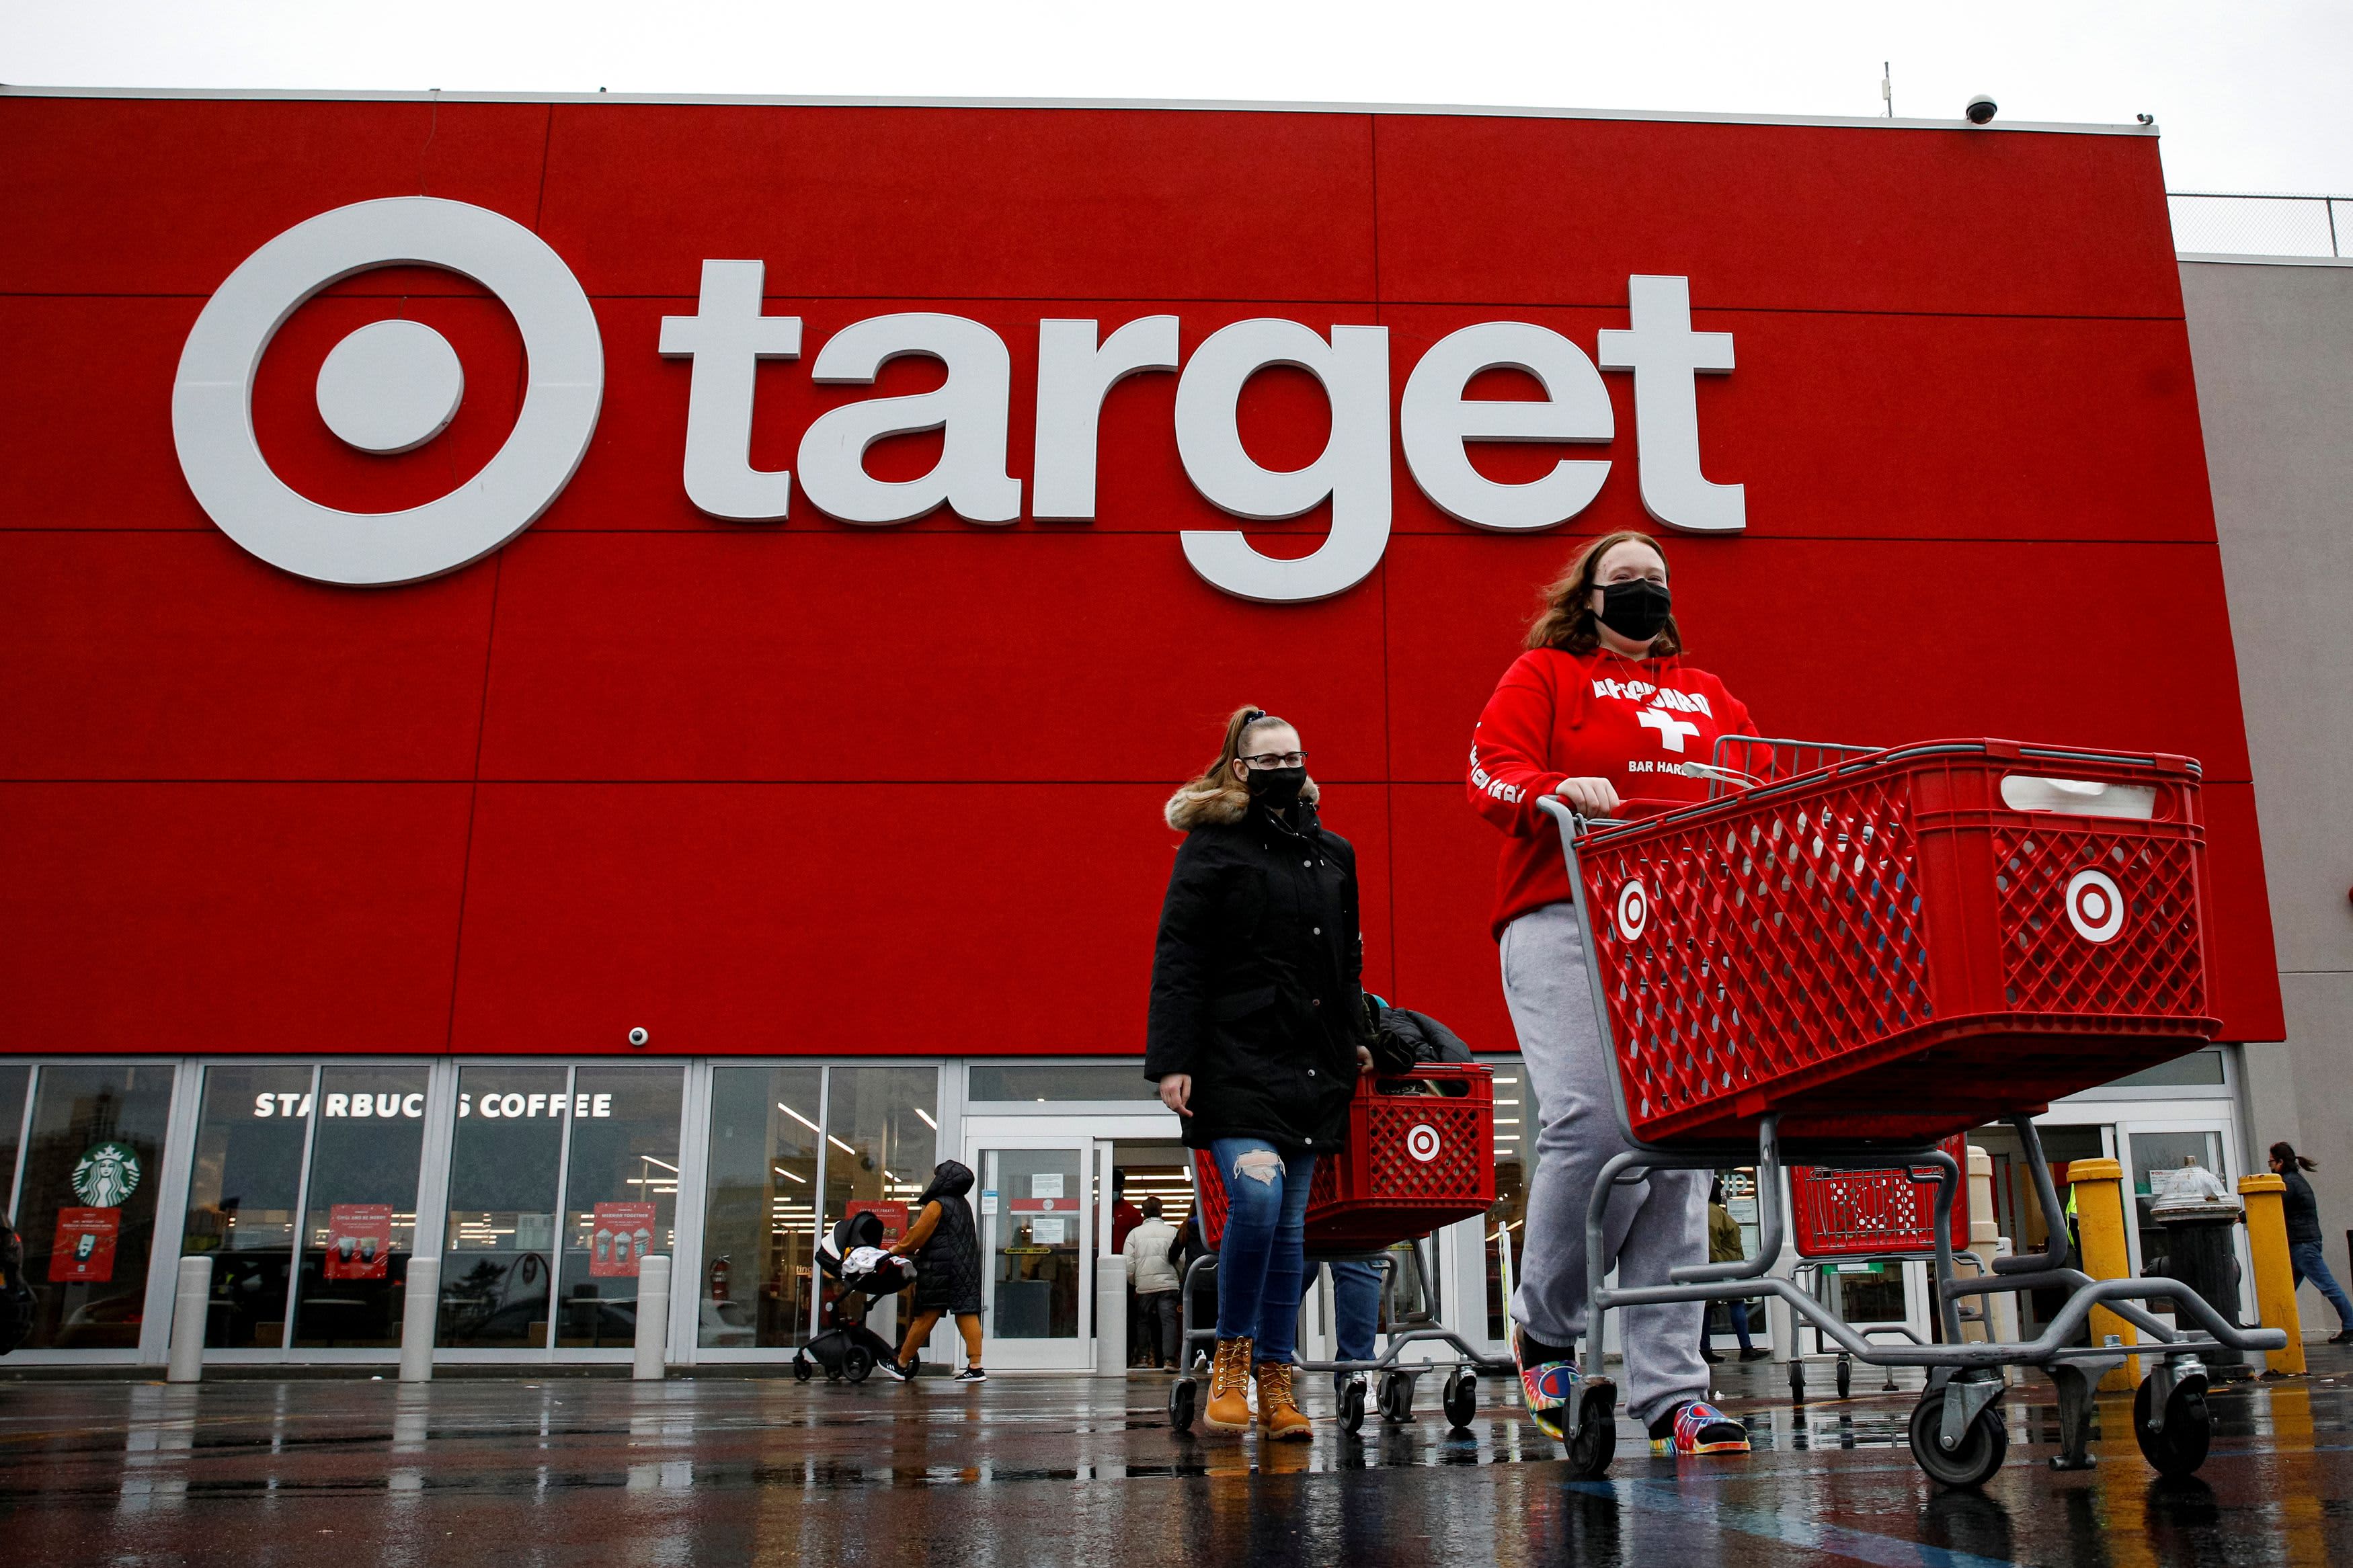 Η Wells Fargo υποβαθμίζει το Target, λέει ότι οι αντίθετοι άνεμοι αυξάνονται για τον λιανοπωλητή